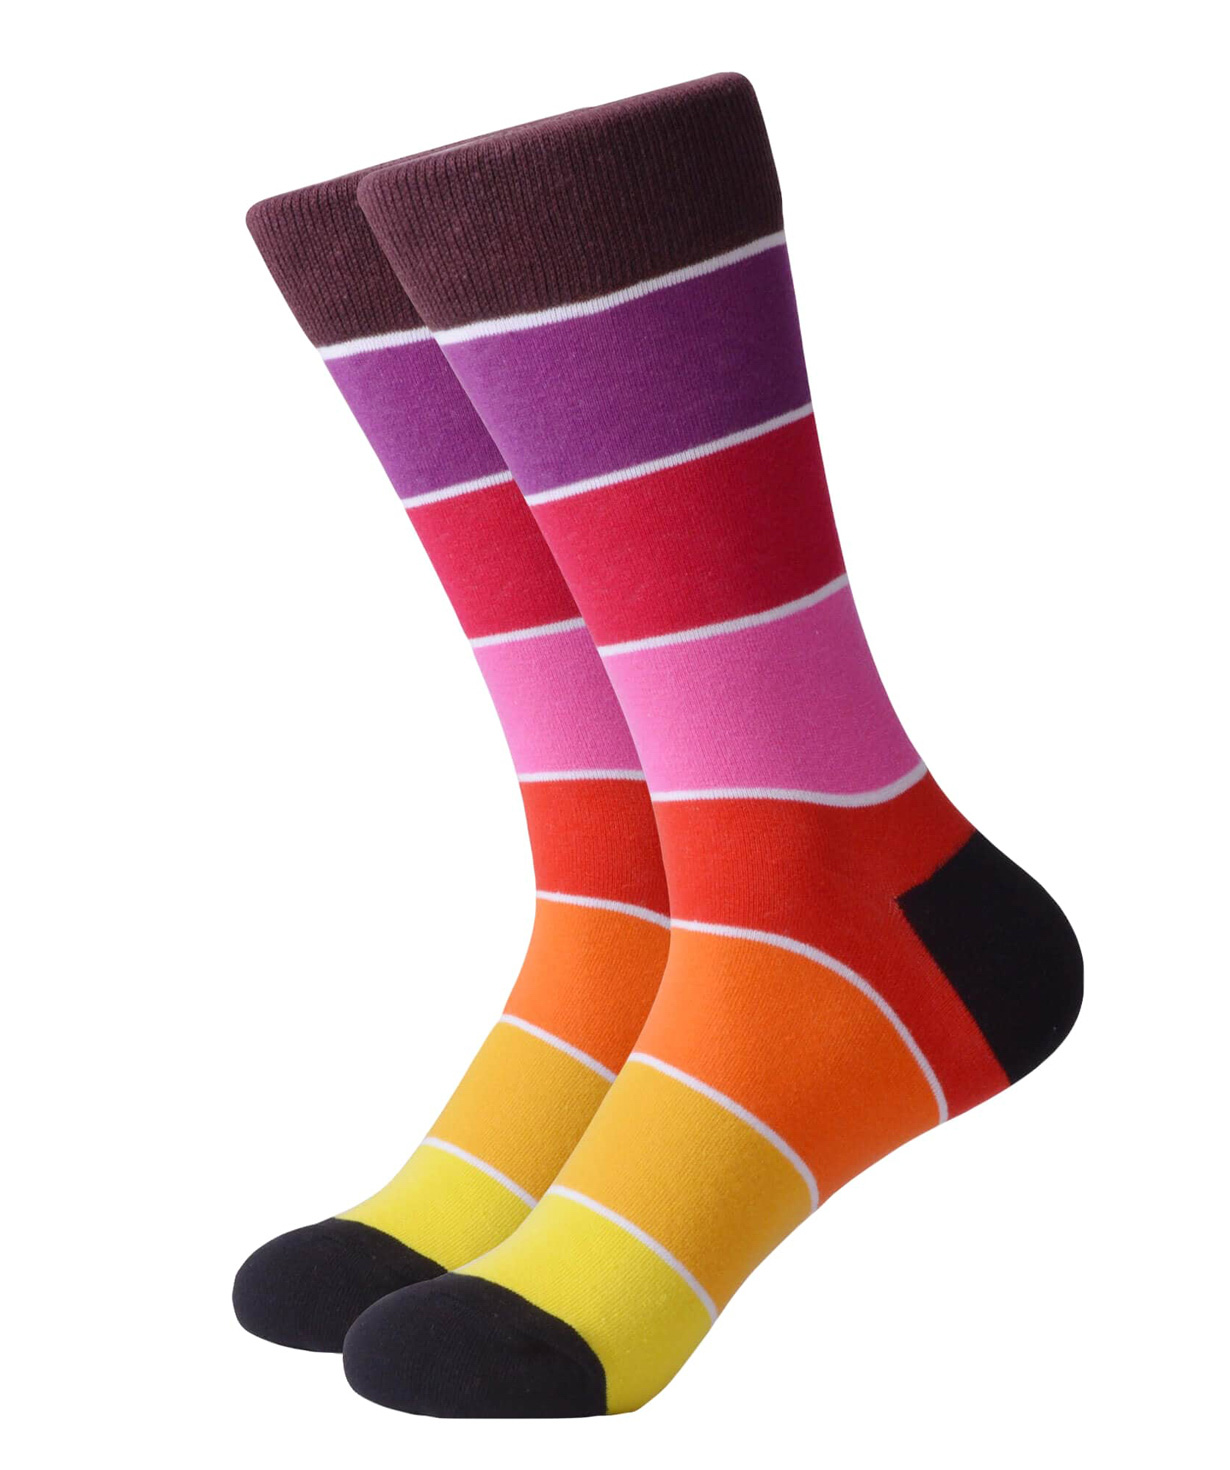 Գուլպաներ «Zeal Socks» գույներ №5